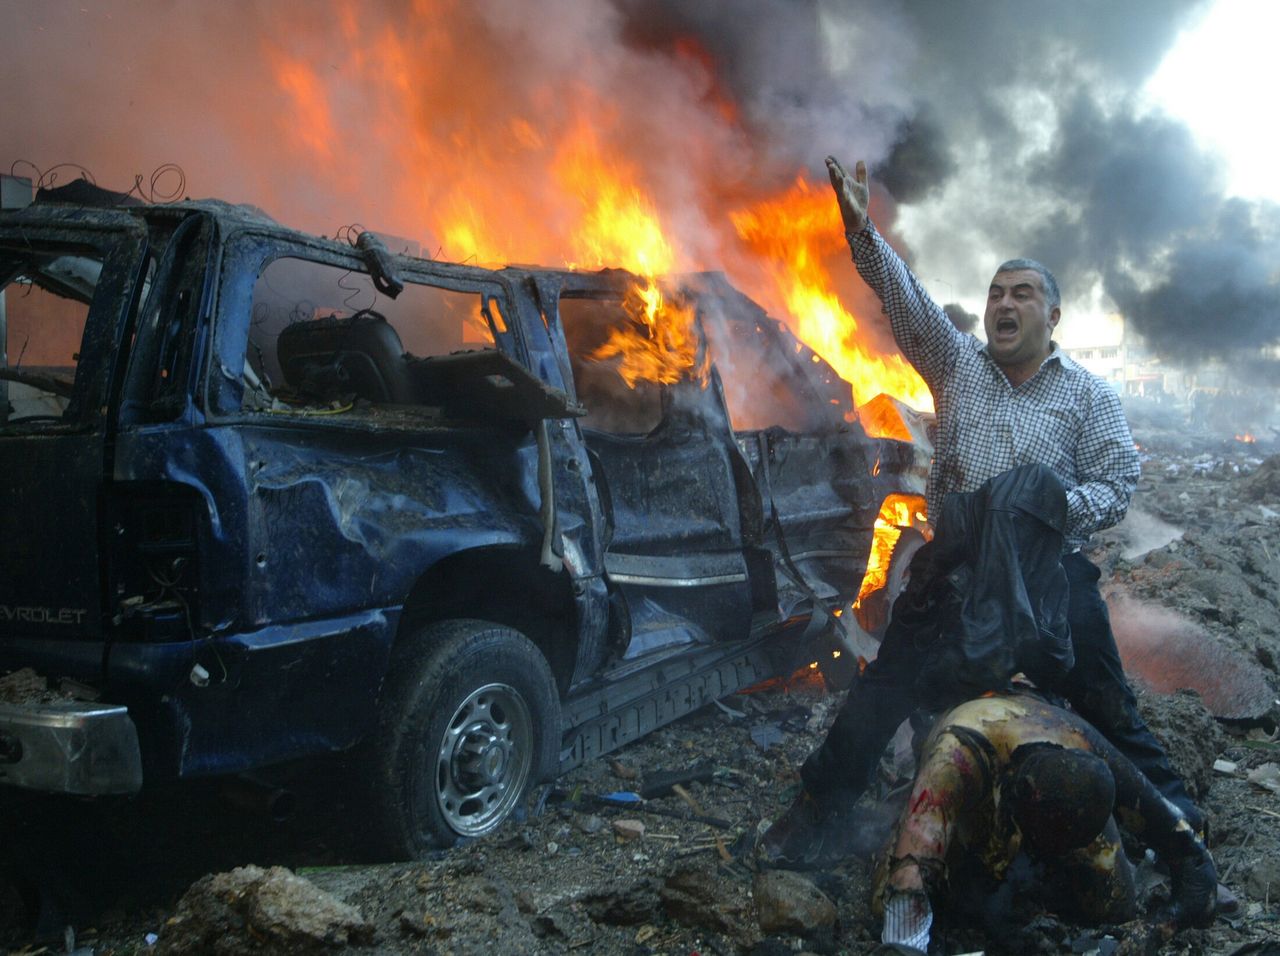 14 Φεβρουαρίου 2005. δολοφονία, τον Φεβρουάριο του 2005, του Σουνίτη πρώην πρωθυπουργού και αντιπάλου του συριακού καθεστώτος, Ραφίκ Χαρίρι, REUTERS/ Mohamed Azakir PP05070289 Pictures of the Year 2005 JS/acm